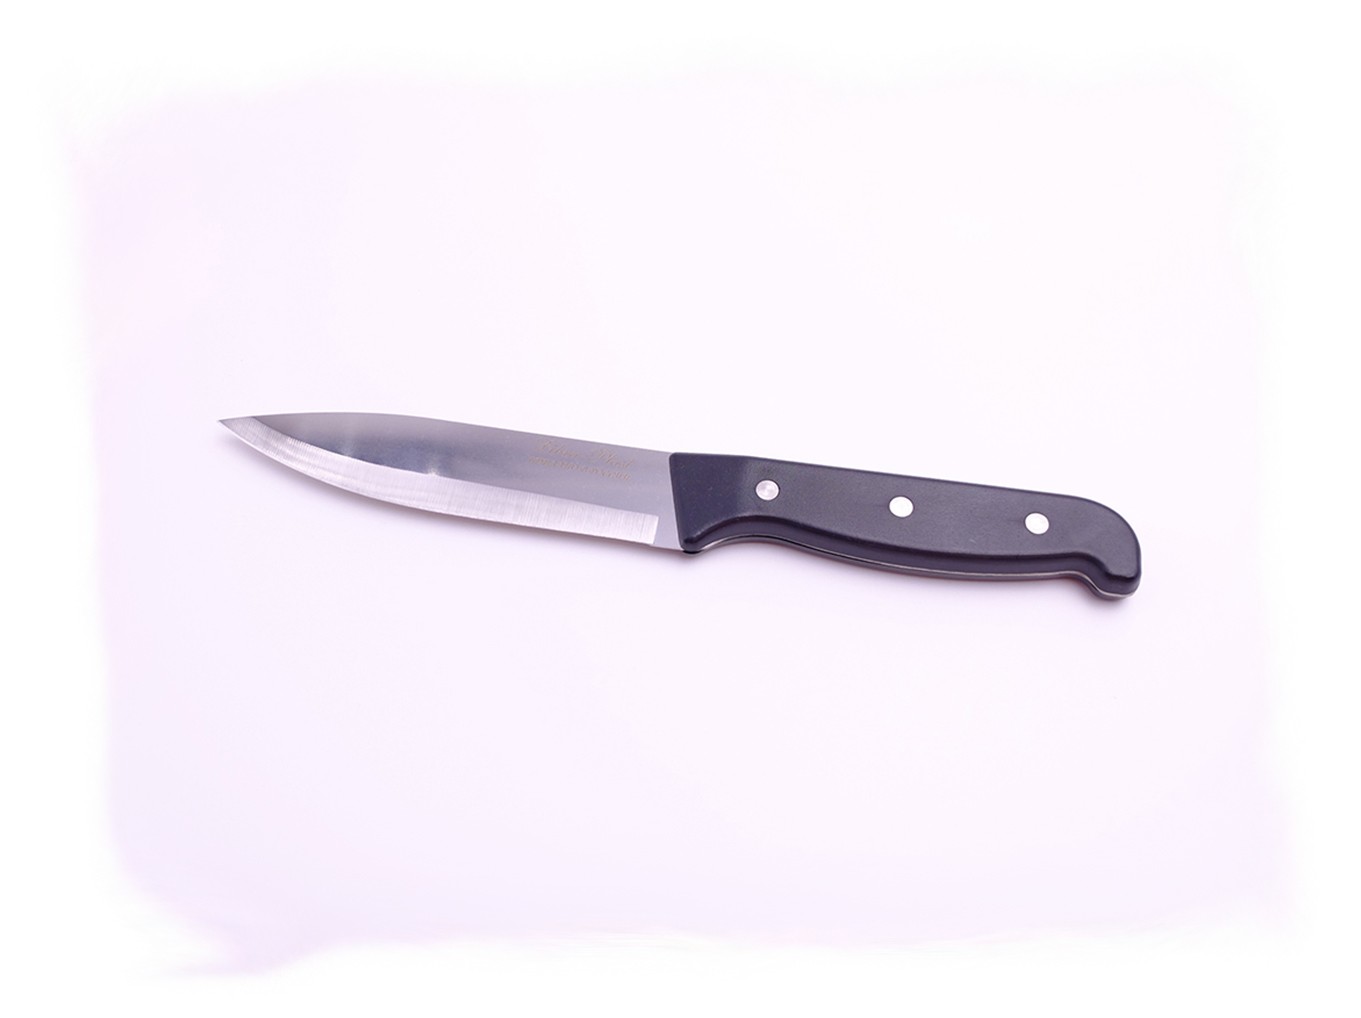 Нож кухонный с пластиковой ручкой 25см КН-100